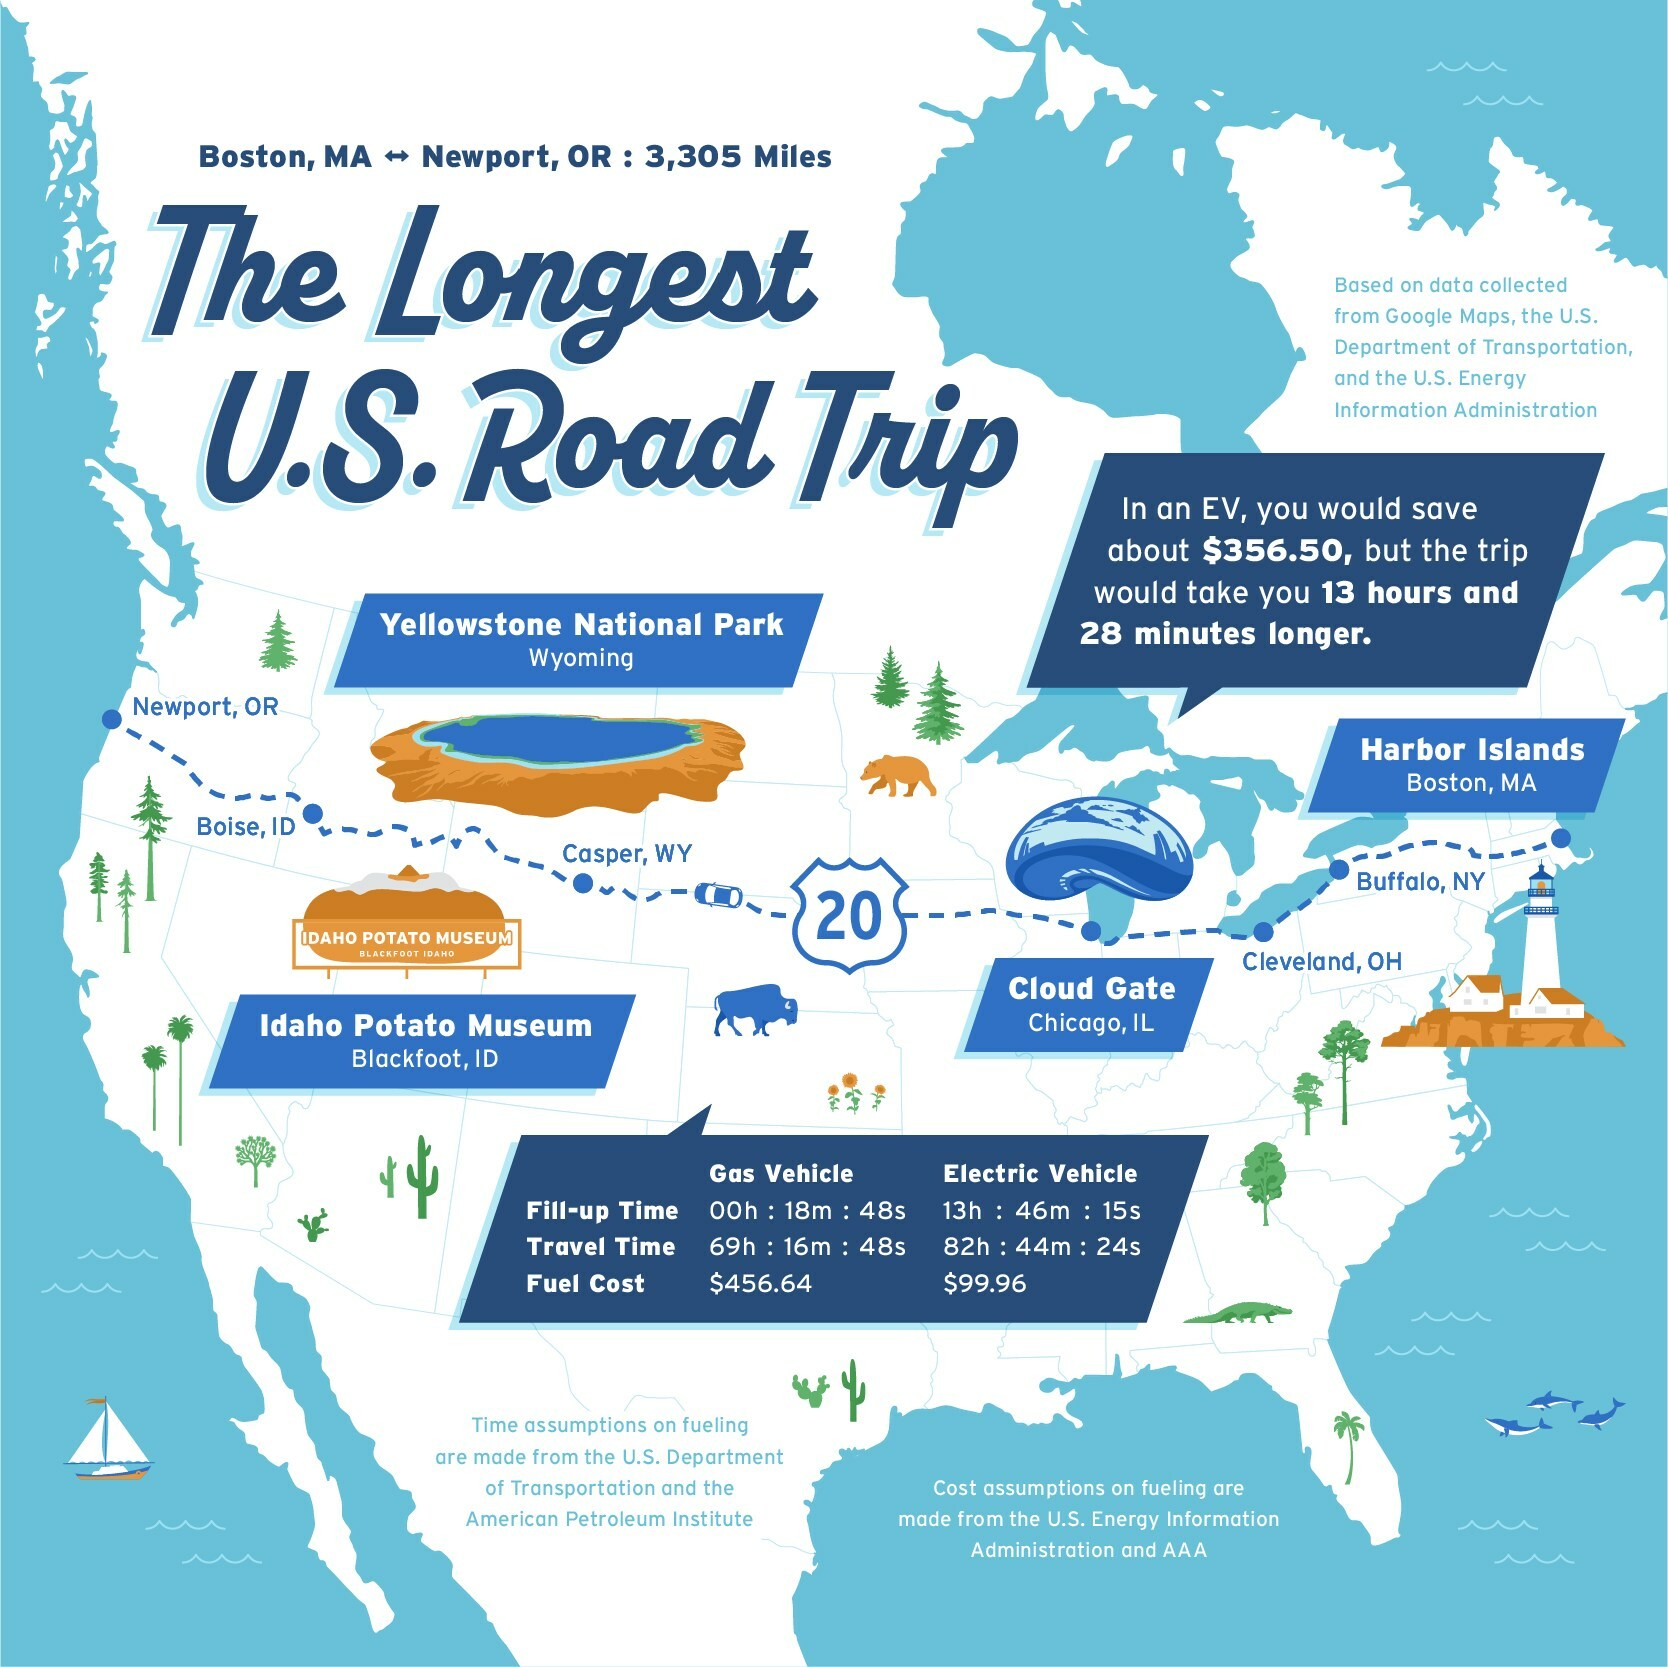 The Longest U.S. Road Trip (Route 20)